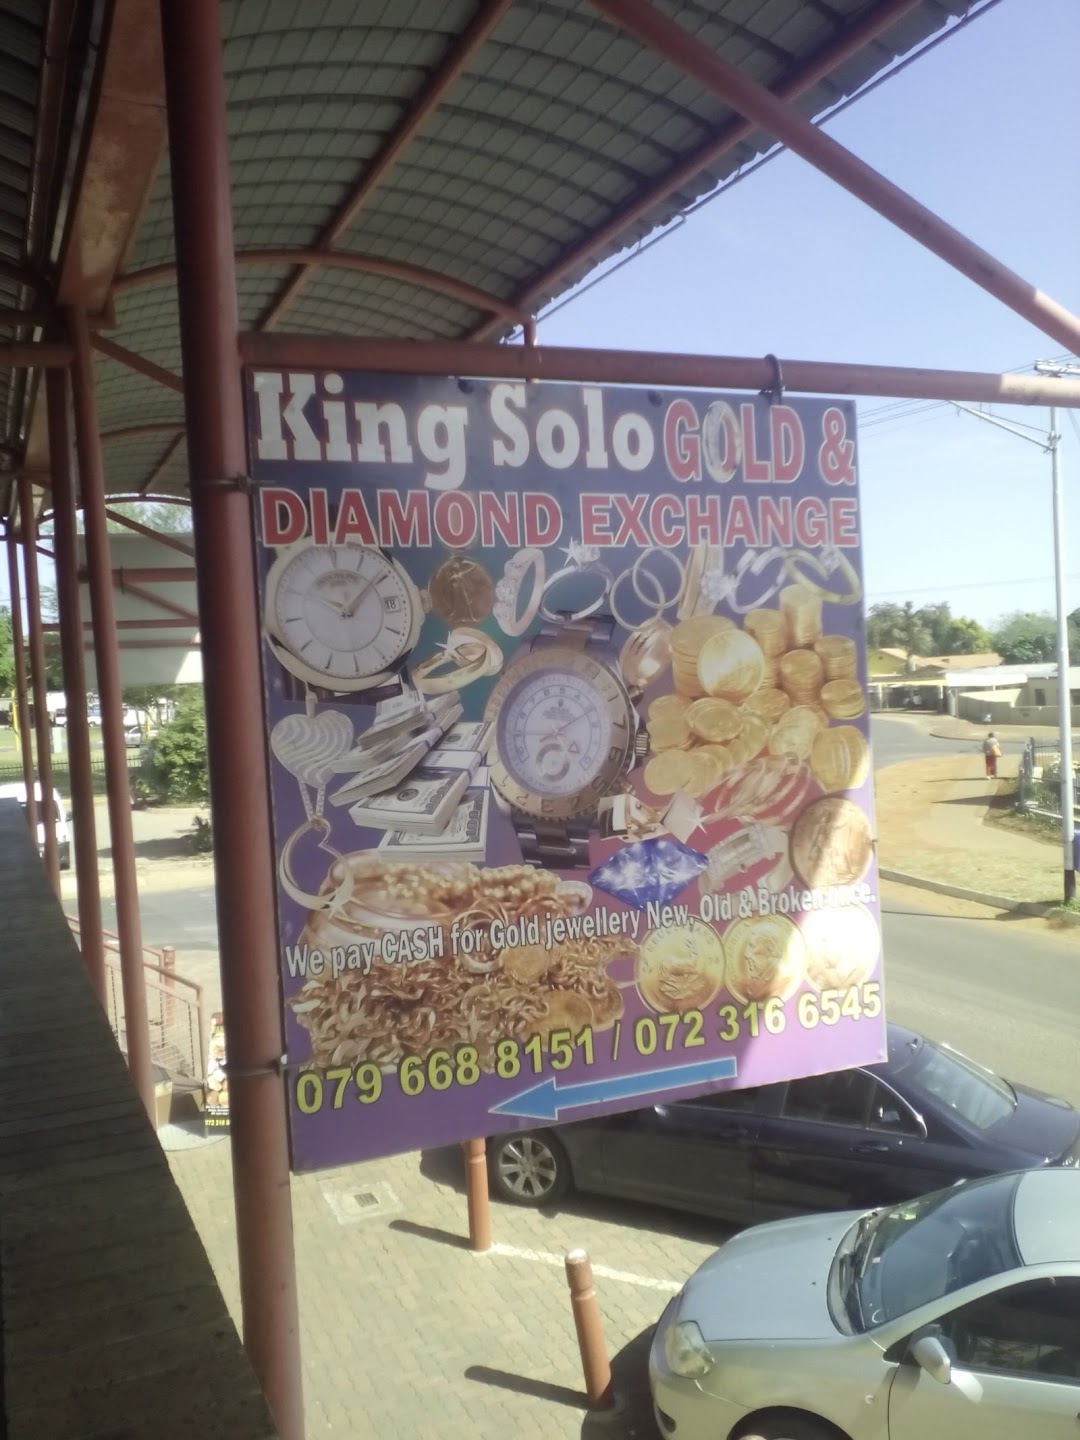 Kingsolo Gold & Diamond Exchange